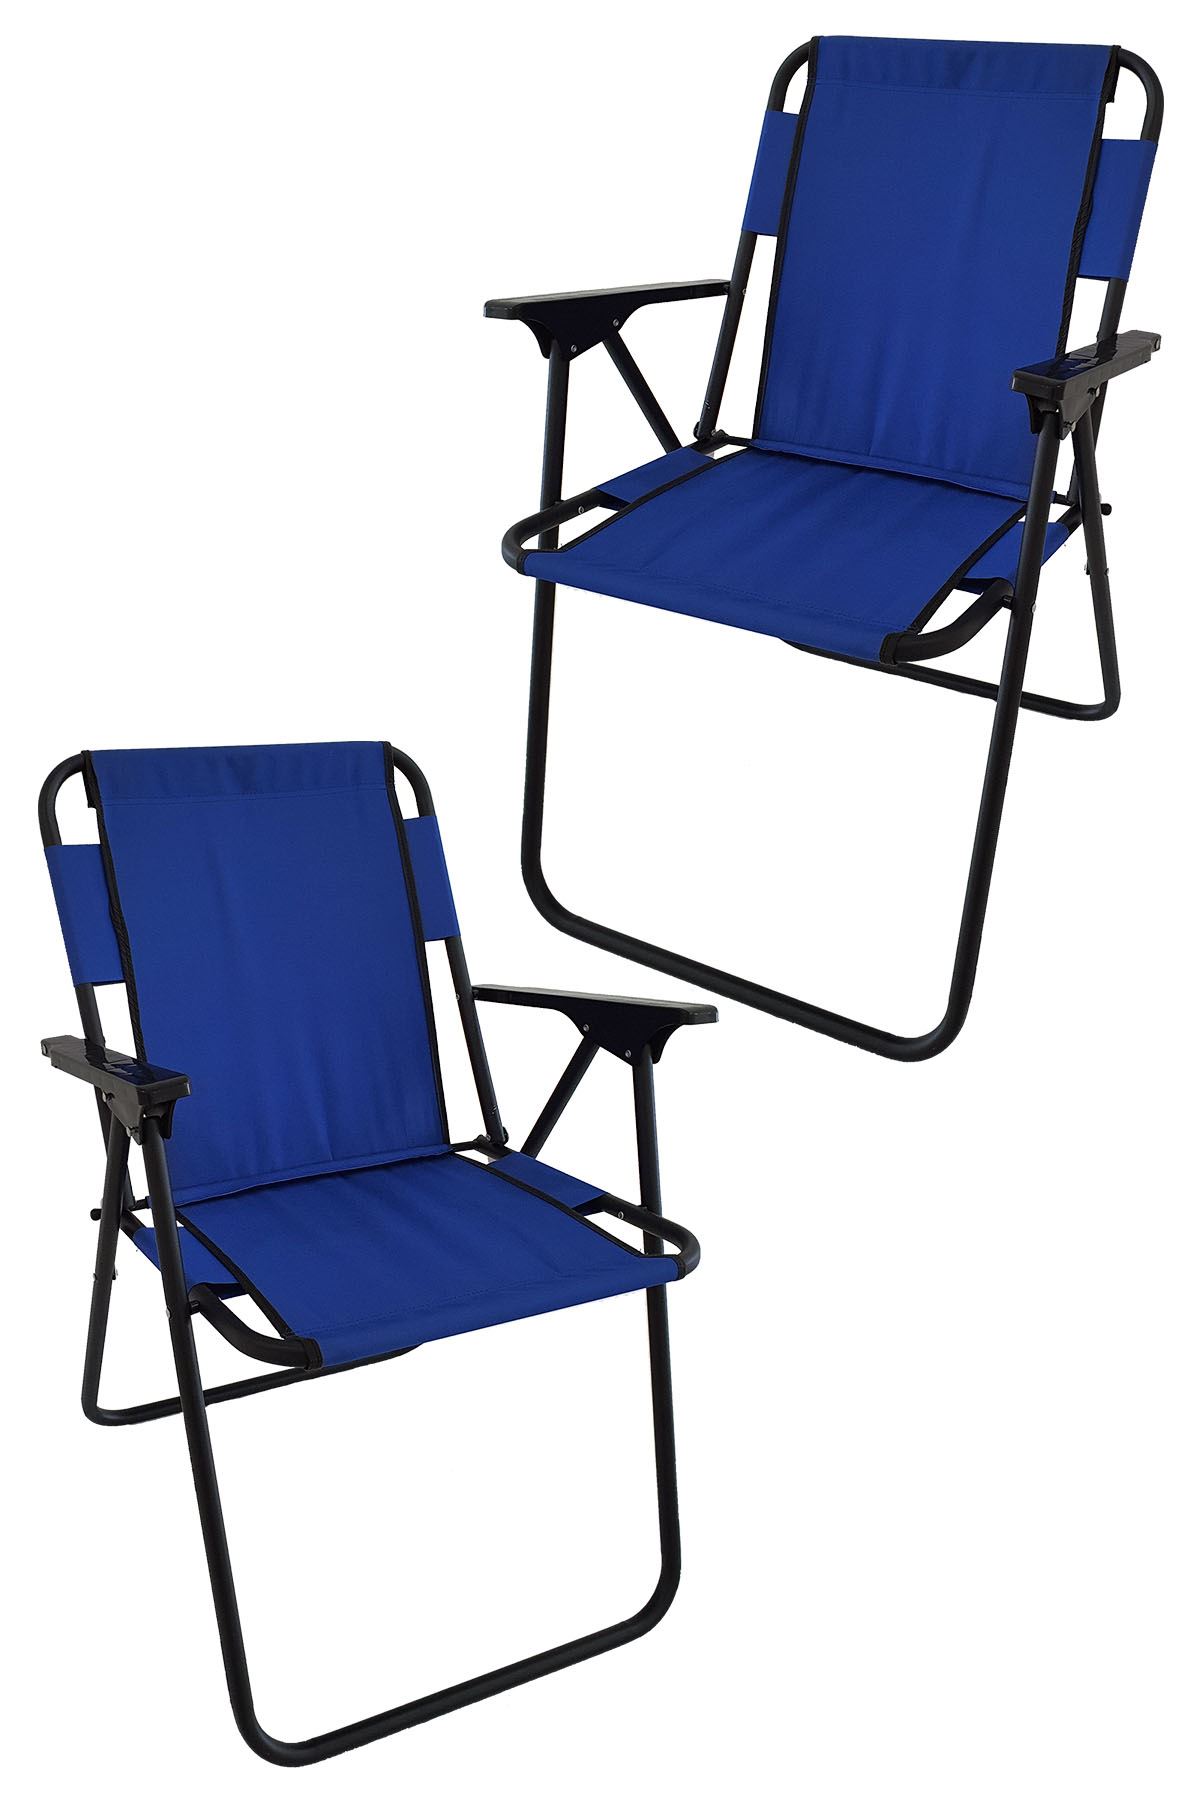 Bofigo 2 Pcs Camping Chair Folding Chair Picnic Chair Beach Chair Blue